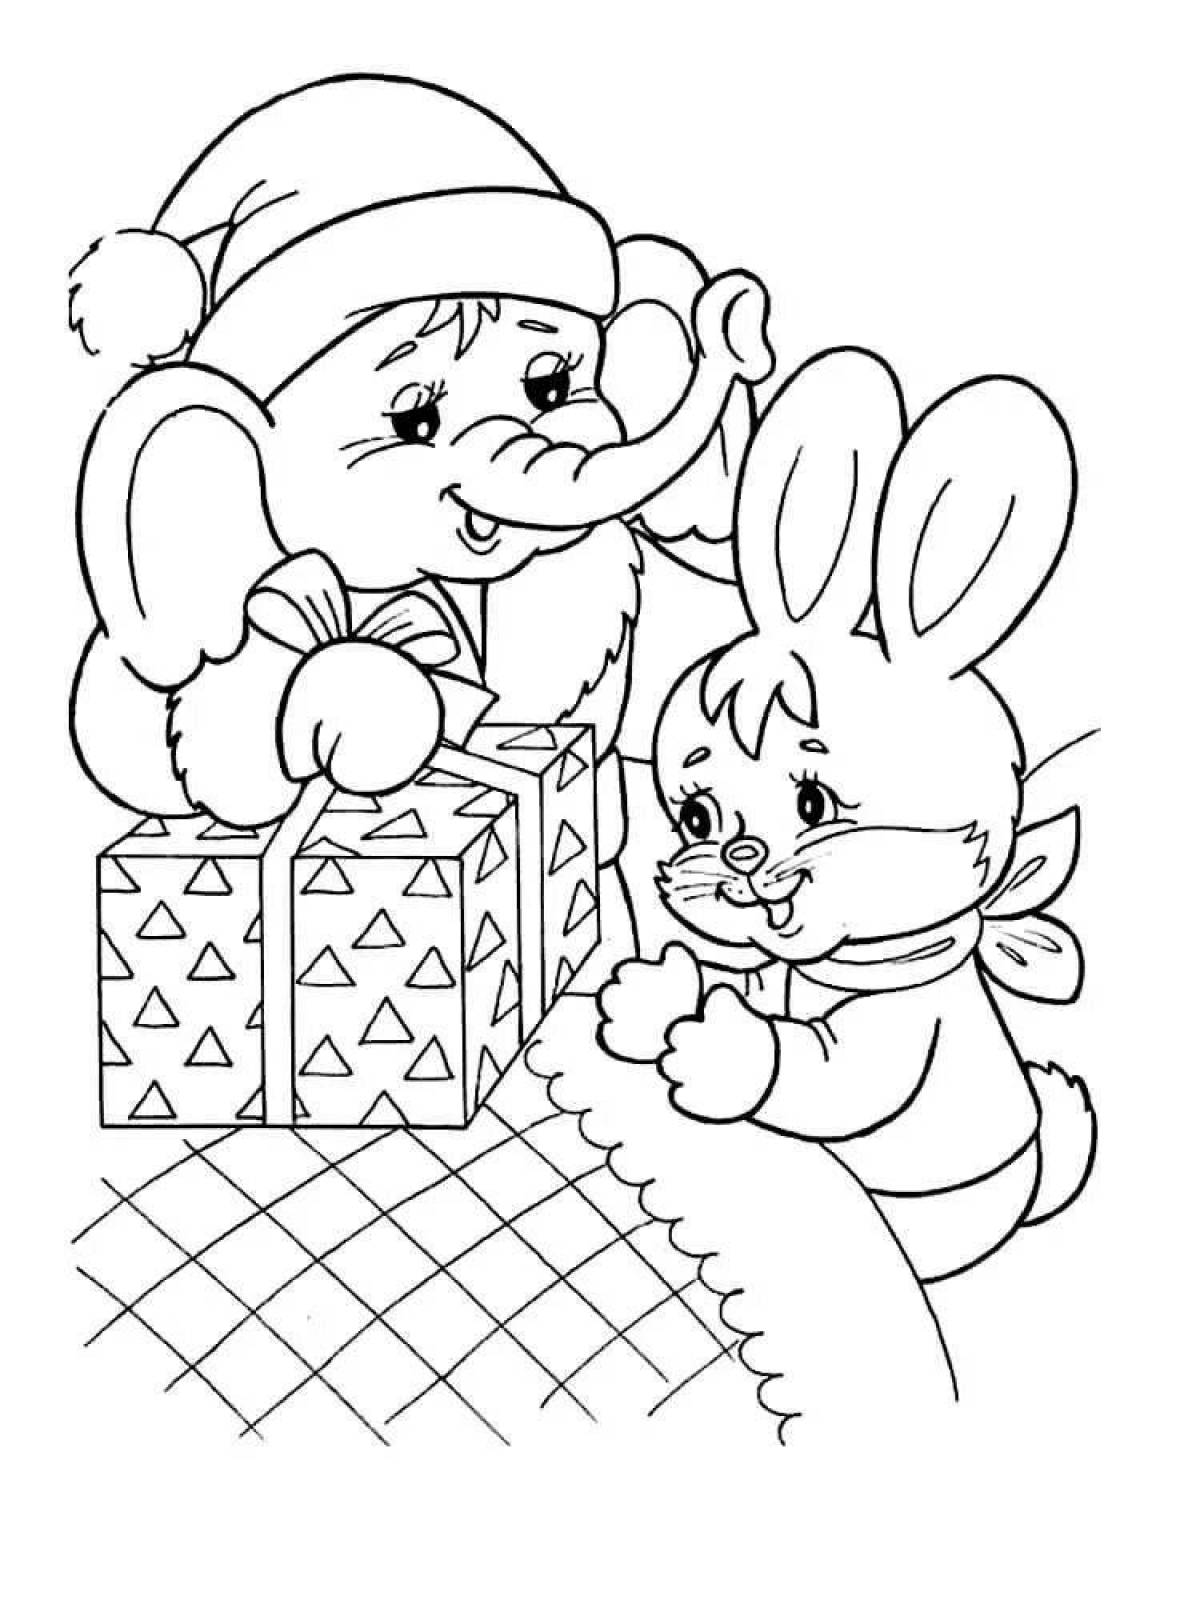 Fluffy christmas bunny